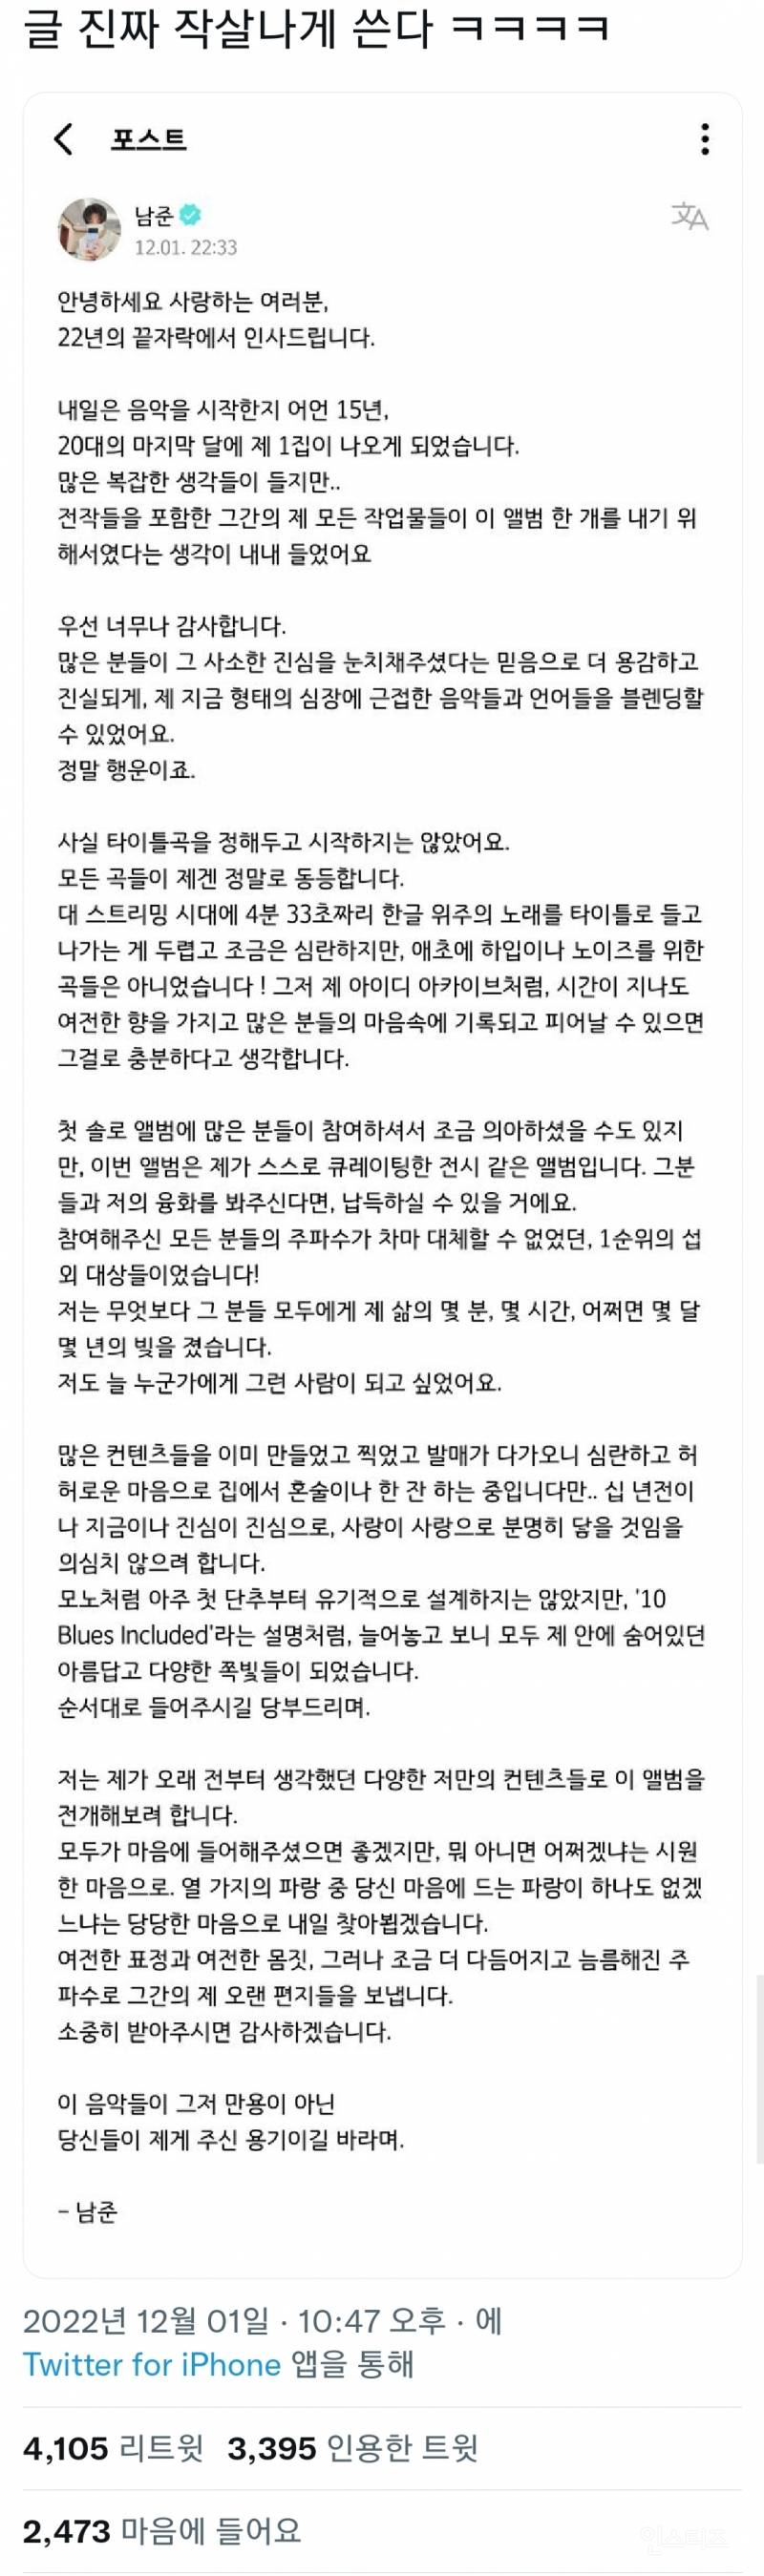 트위터에서 알티타고있는 방탄소년단 RM이 쓴 위버스 글(ft.어떻게 글에서 교보문고 냄새가 나냐) | 인스티즈